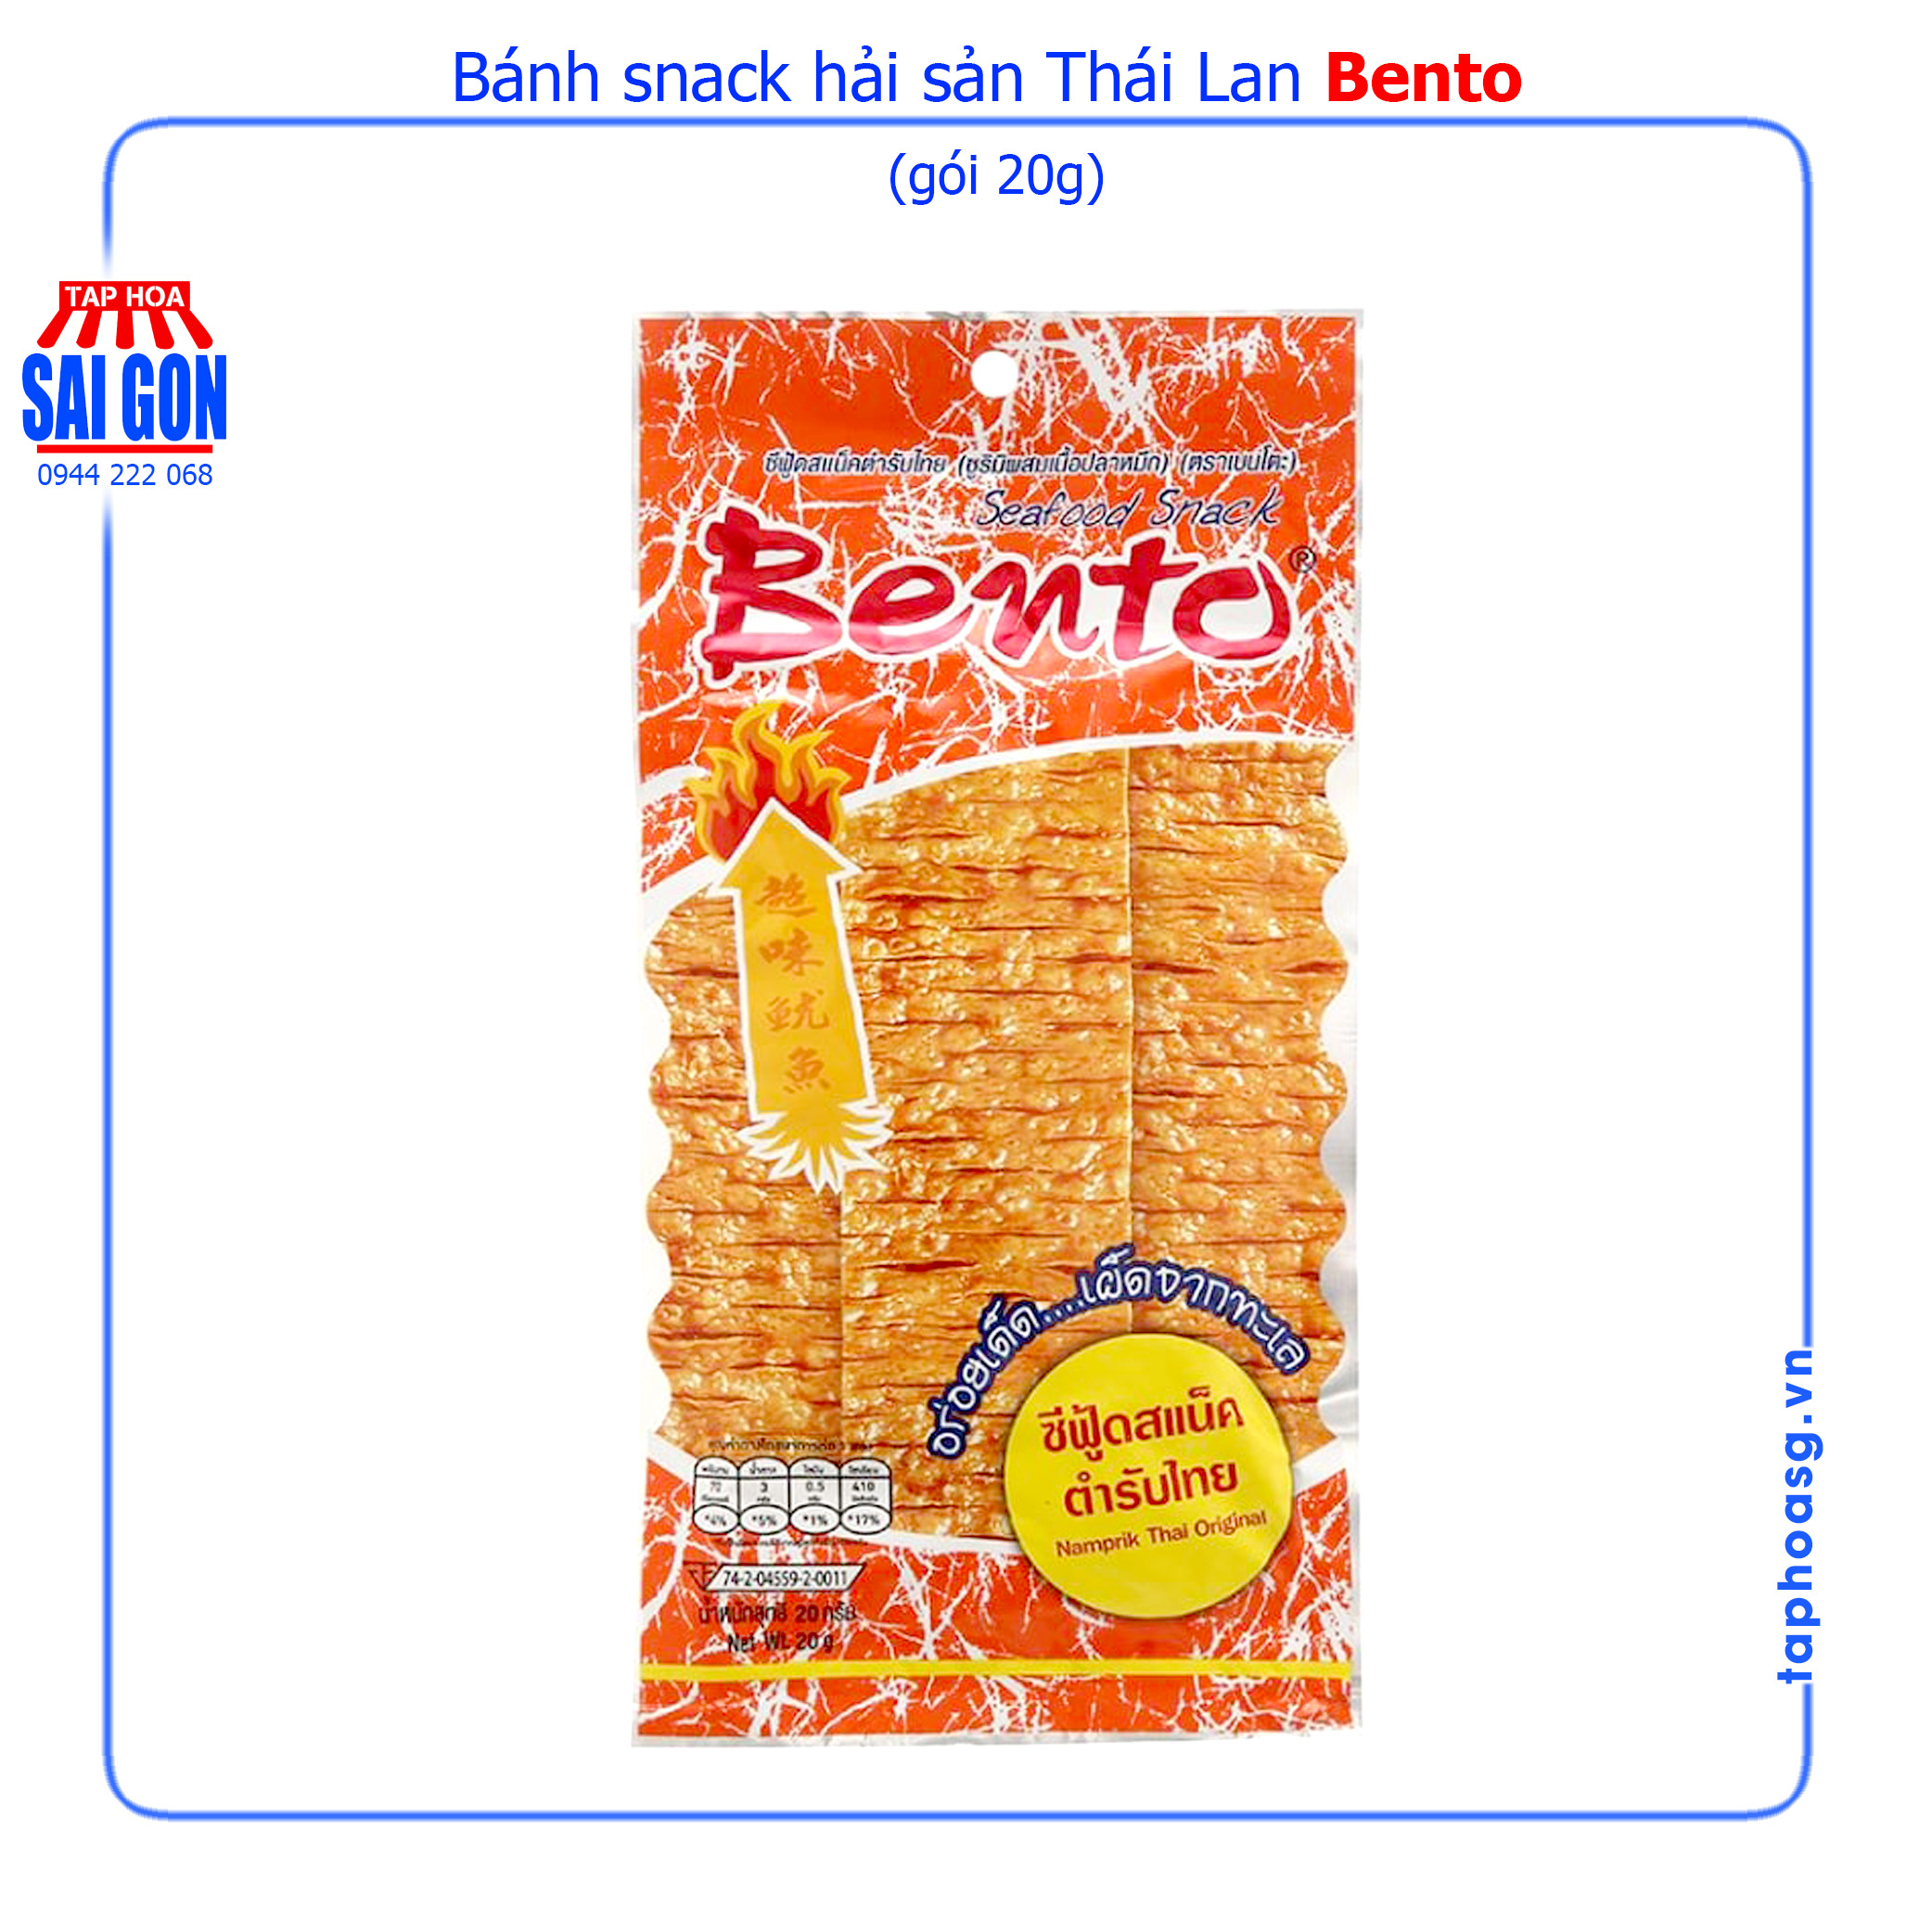 bánh snack hải sản bento gói 20g với các gia vị thái lan mang đến vị cay 1